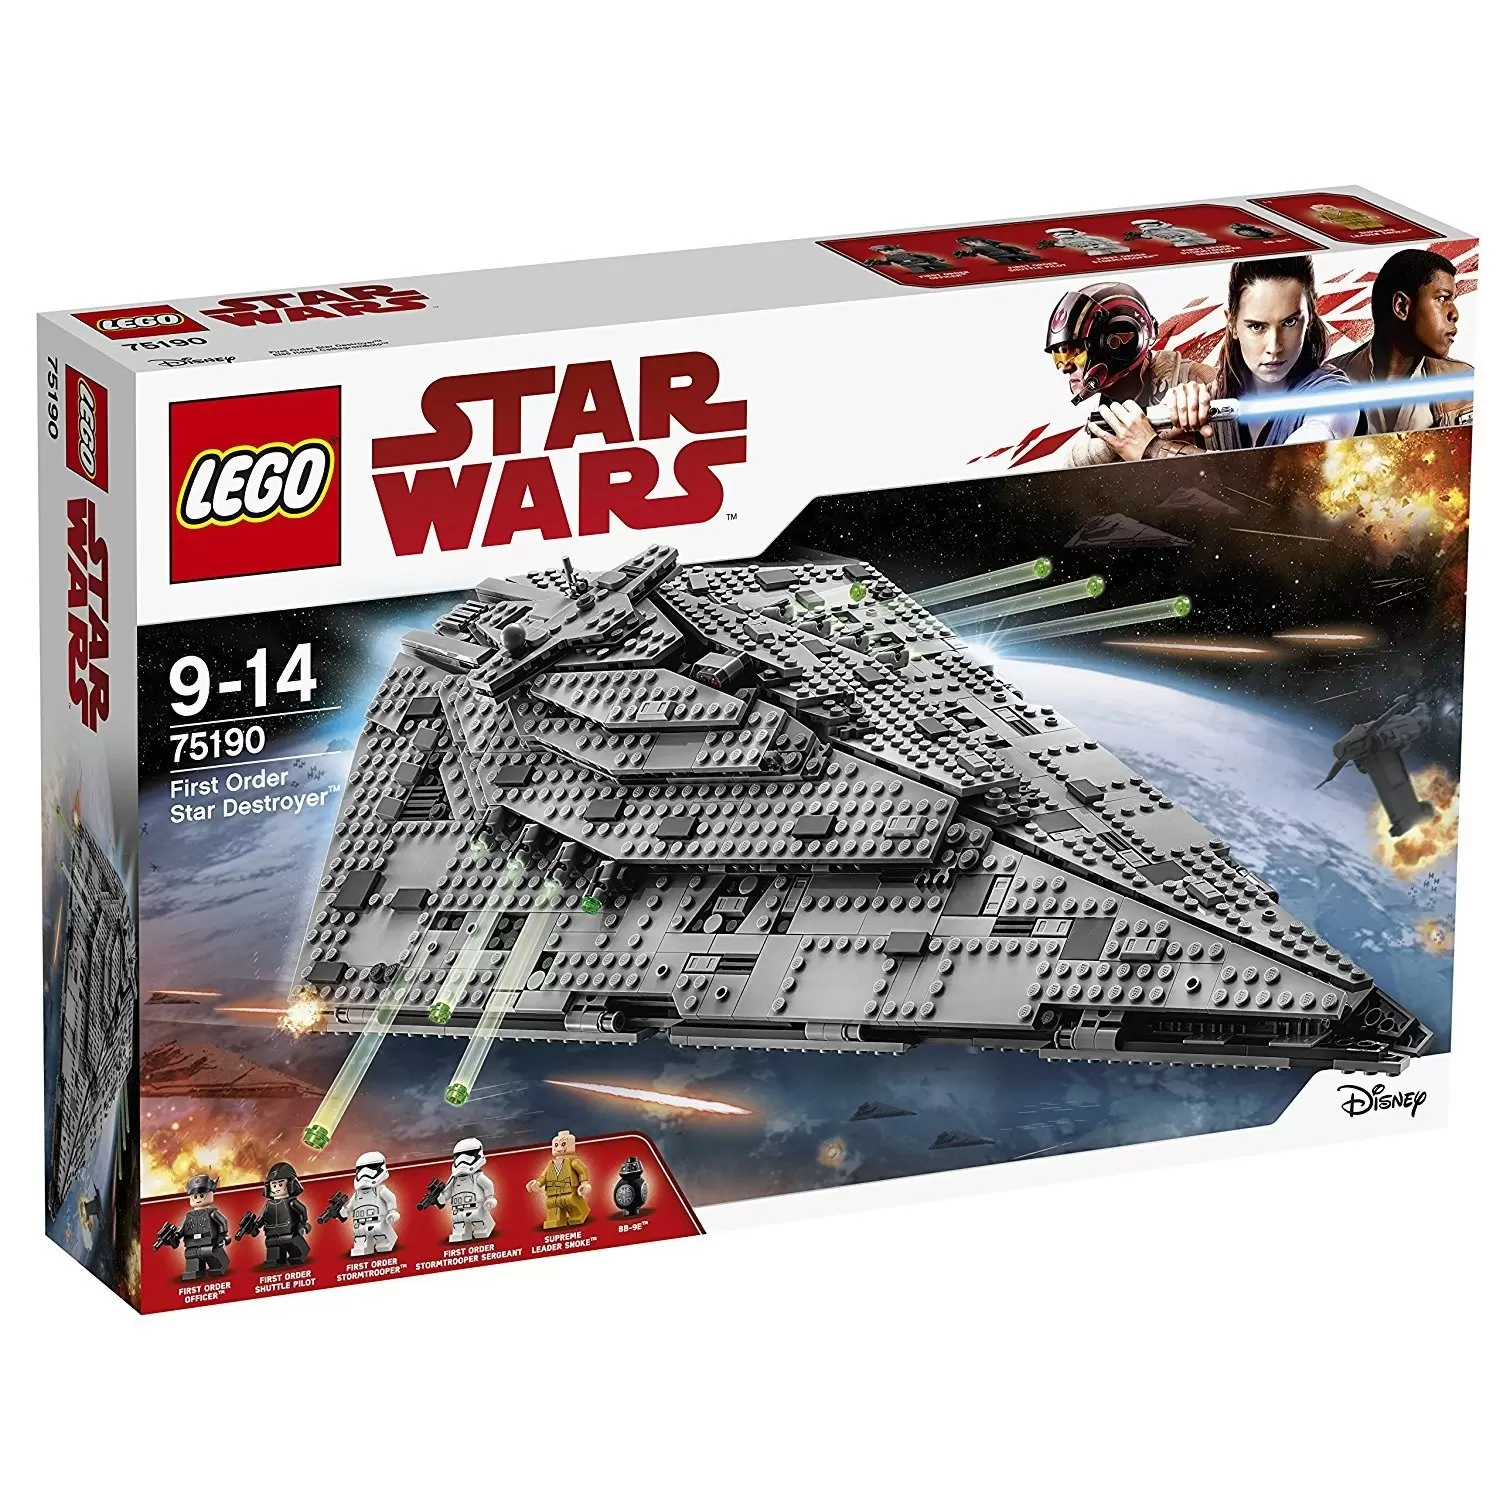 LEGO Star Wars - First Order Star Destroyer